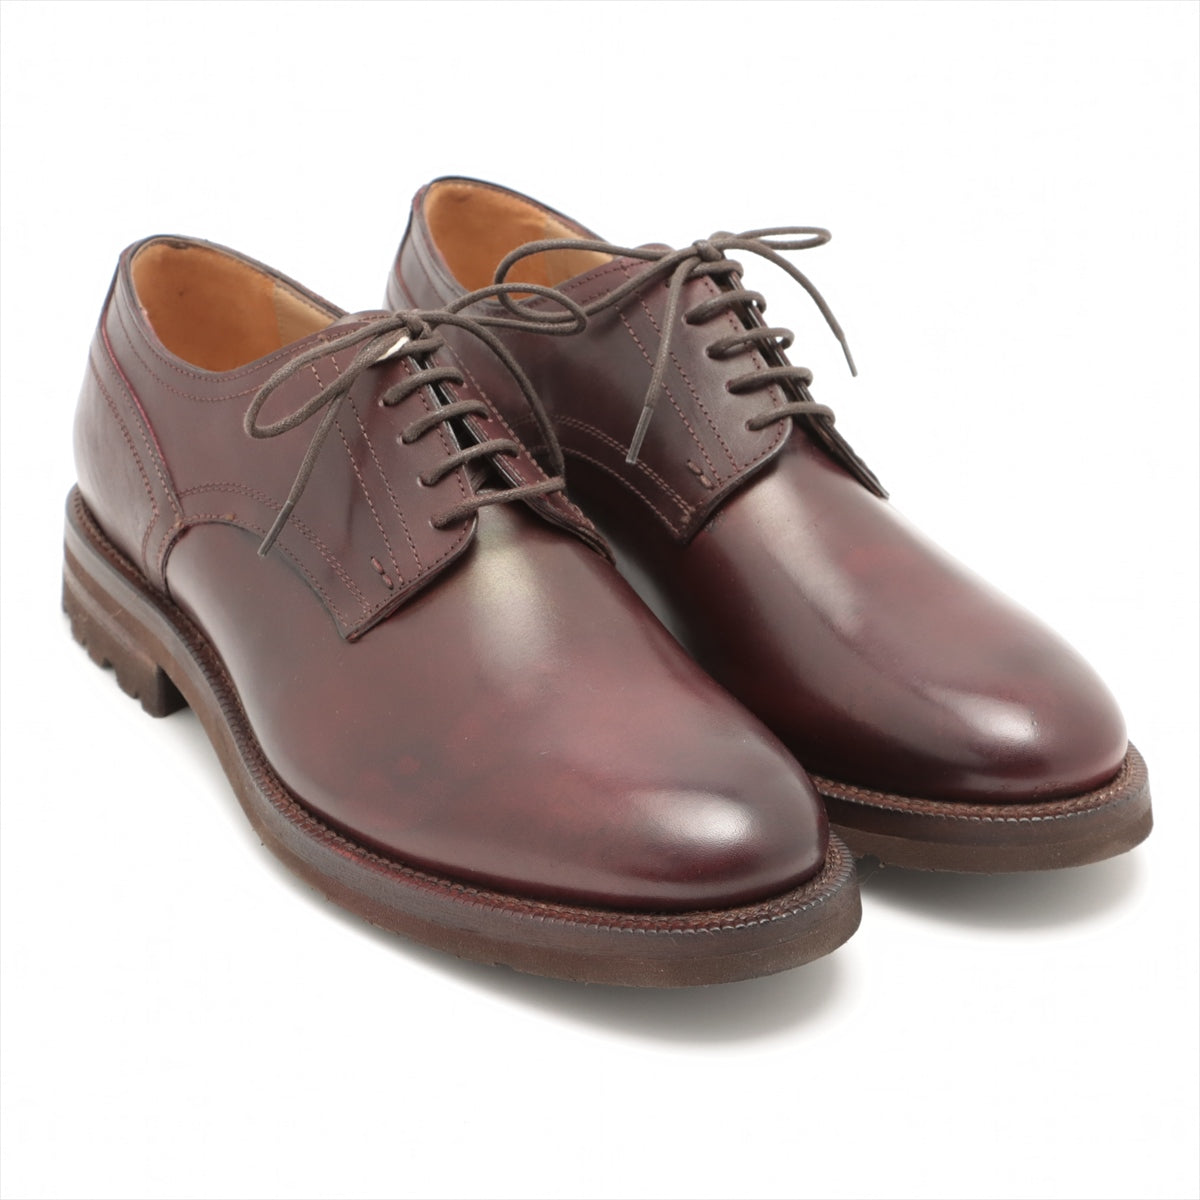 Stefano Branchini Leather Leather shoes 42 1/2 Men's Bordeaux SG332